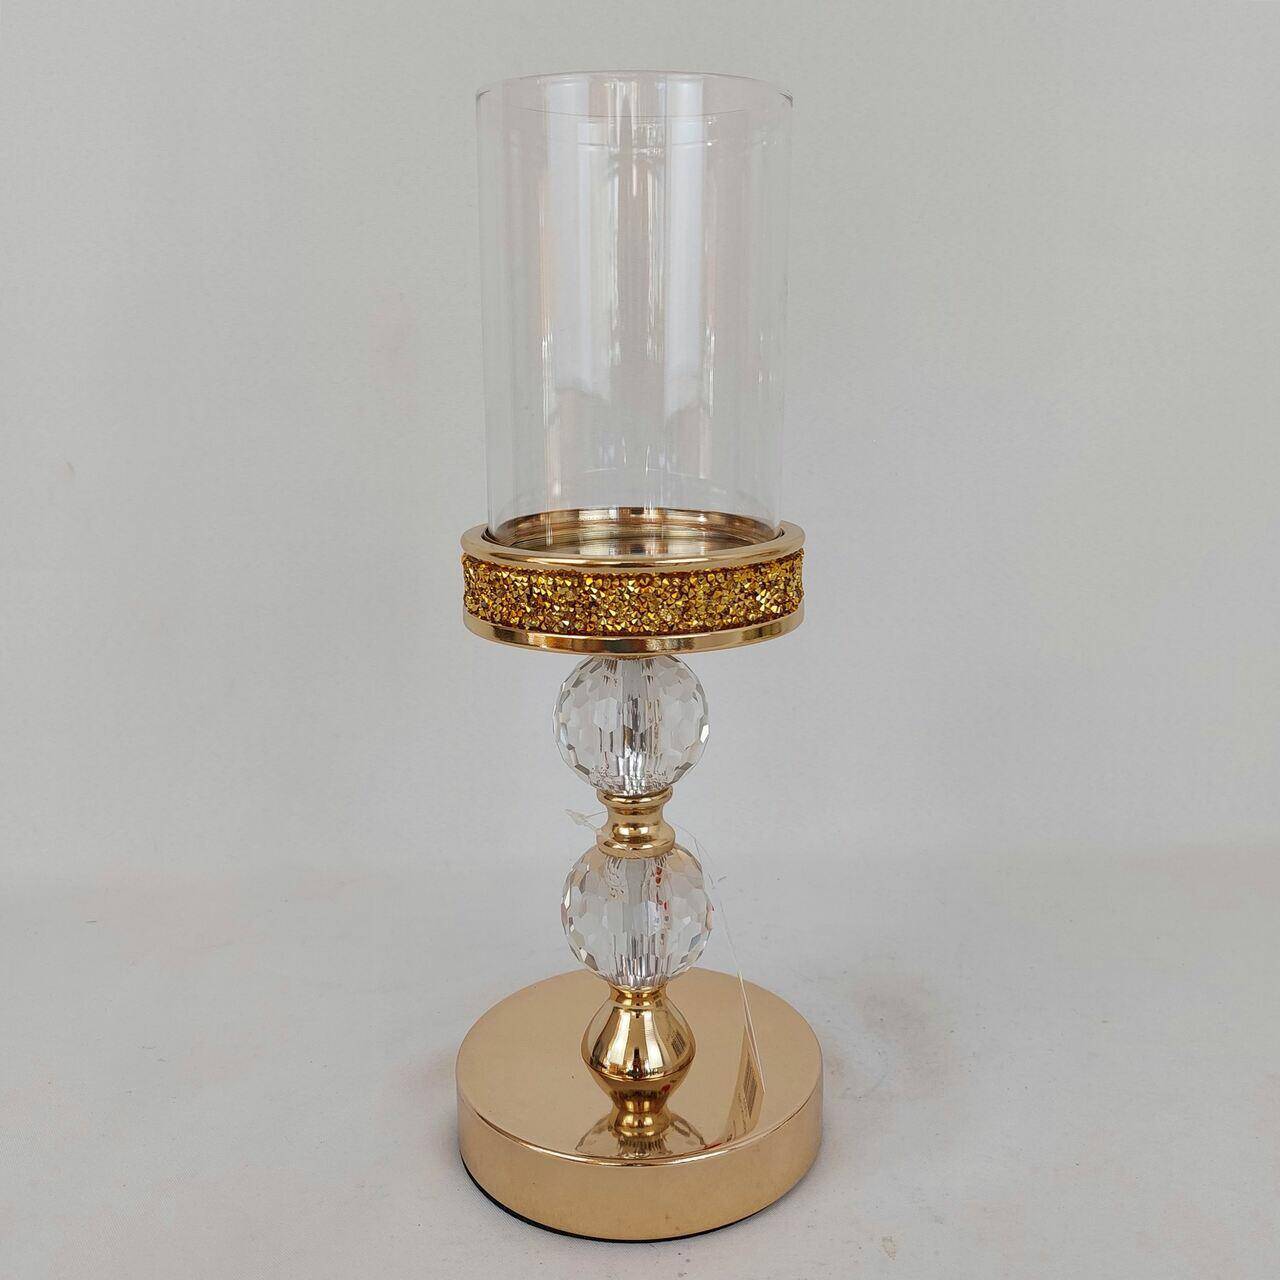 Świecznik złoty z kloszem szklanym 33cm